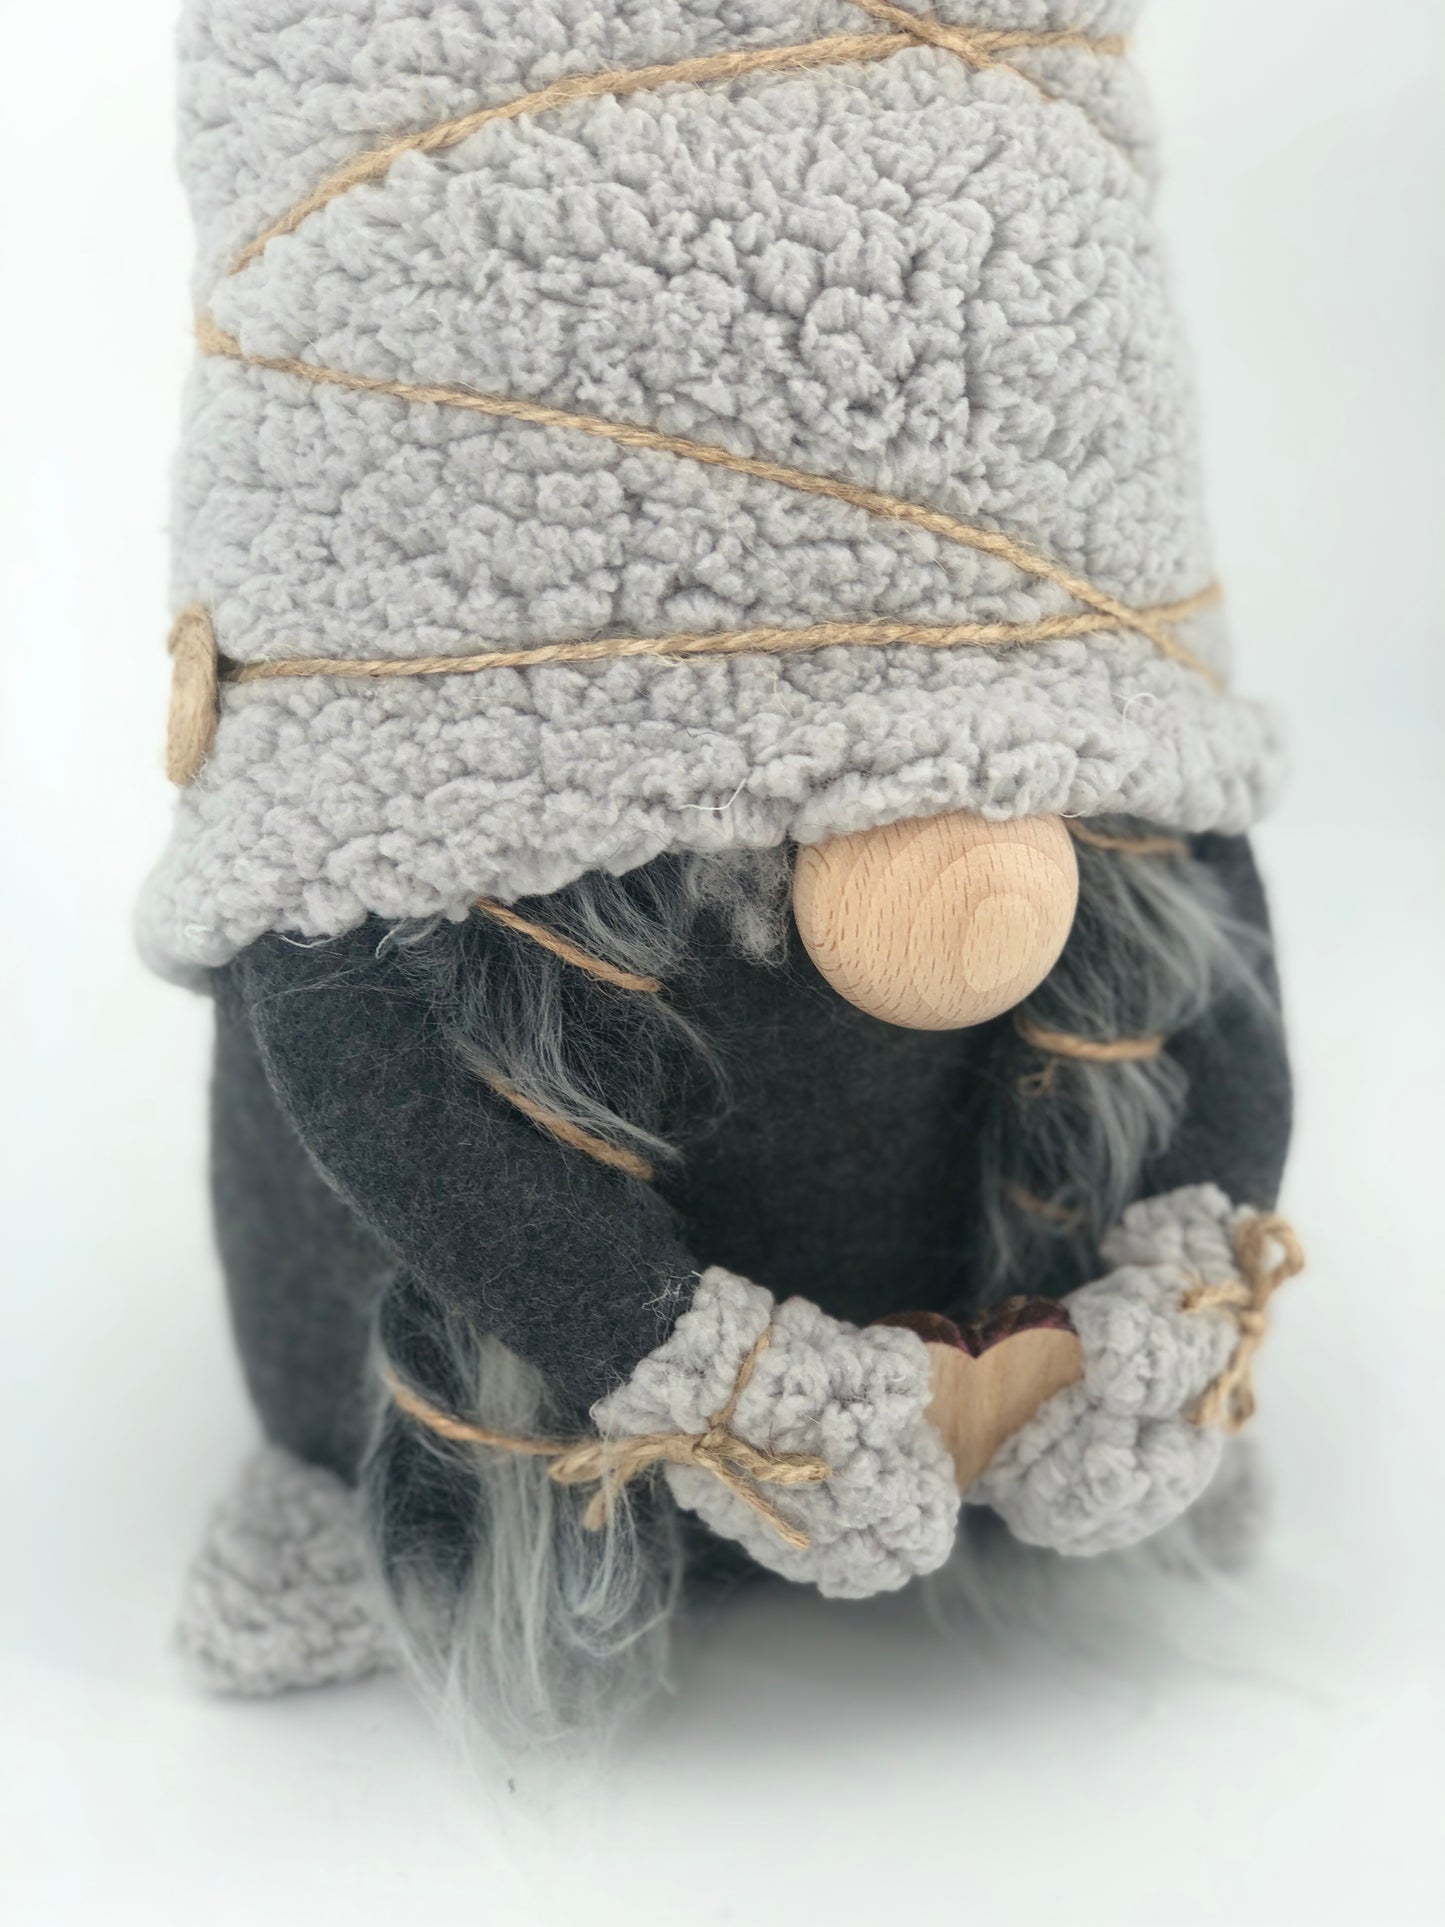 Gnome d'Hiver - gnomes de Noël - Collection LOVE - décoration et cadeaux